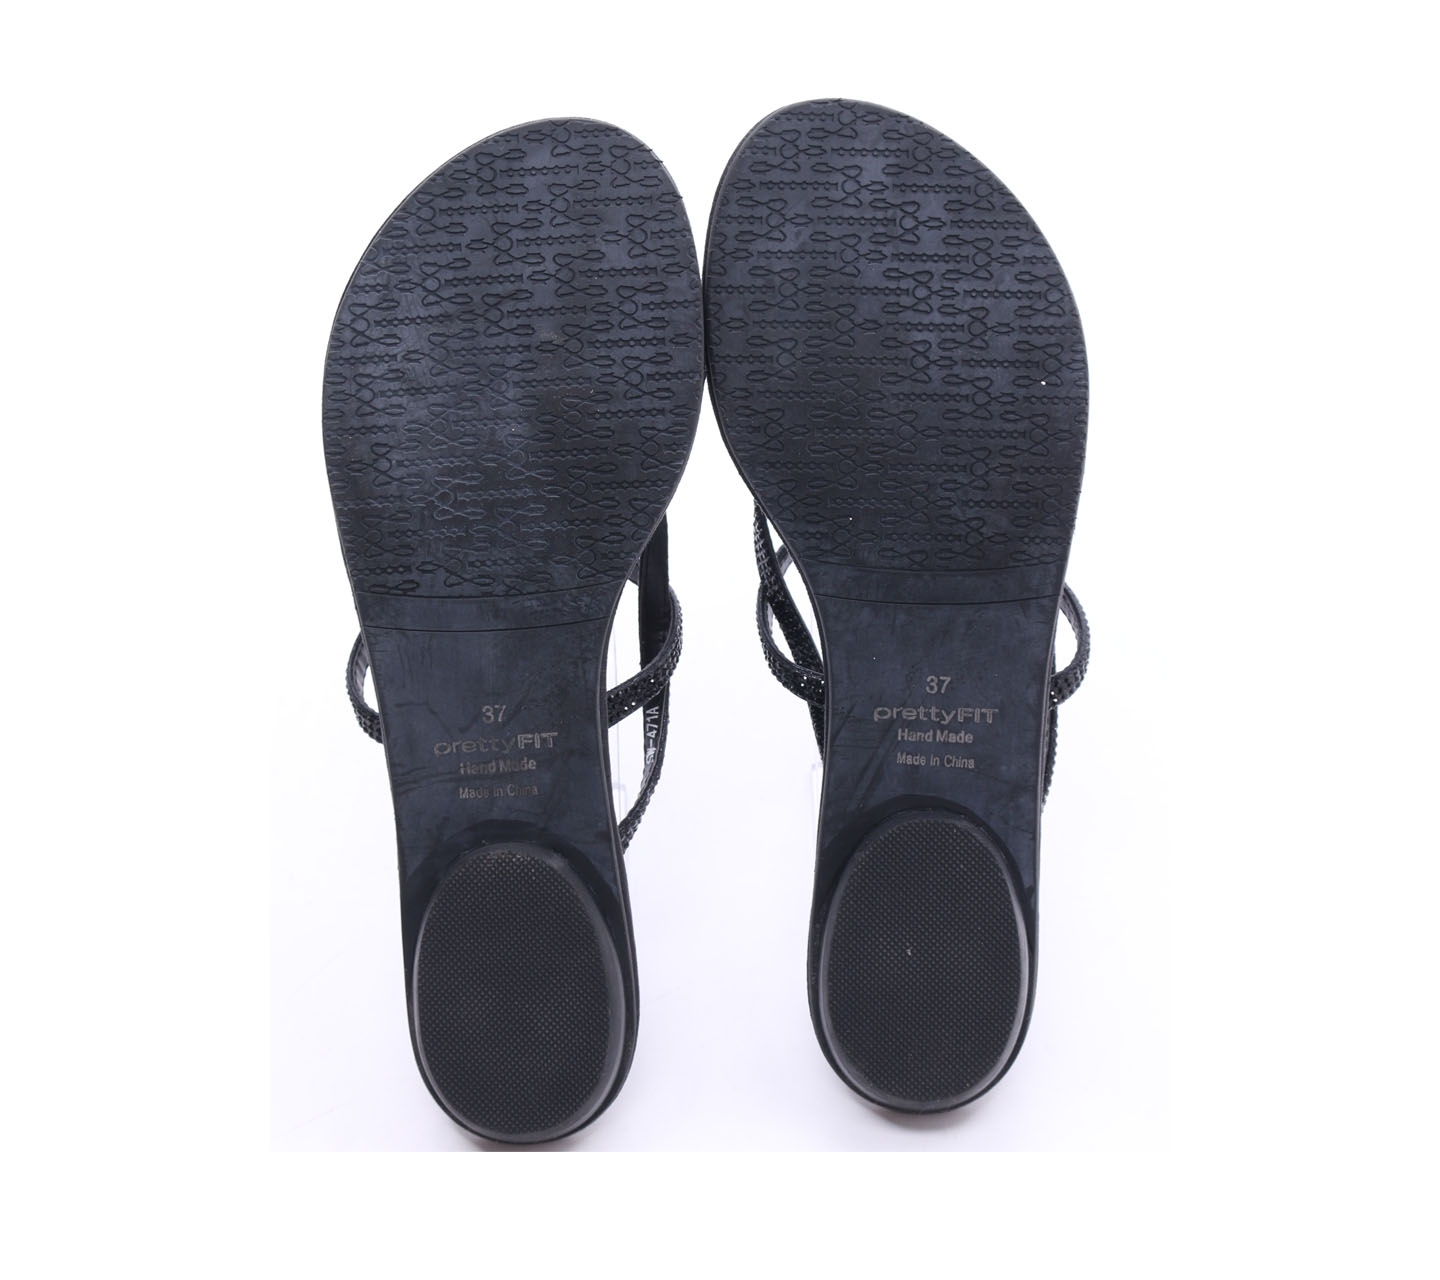 Pretty Fit Black Sandals